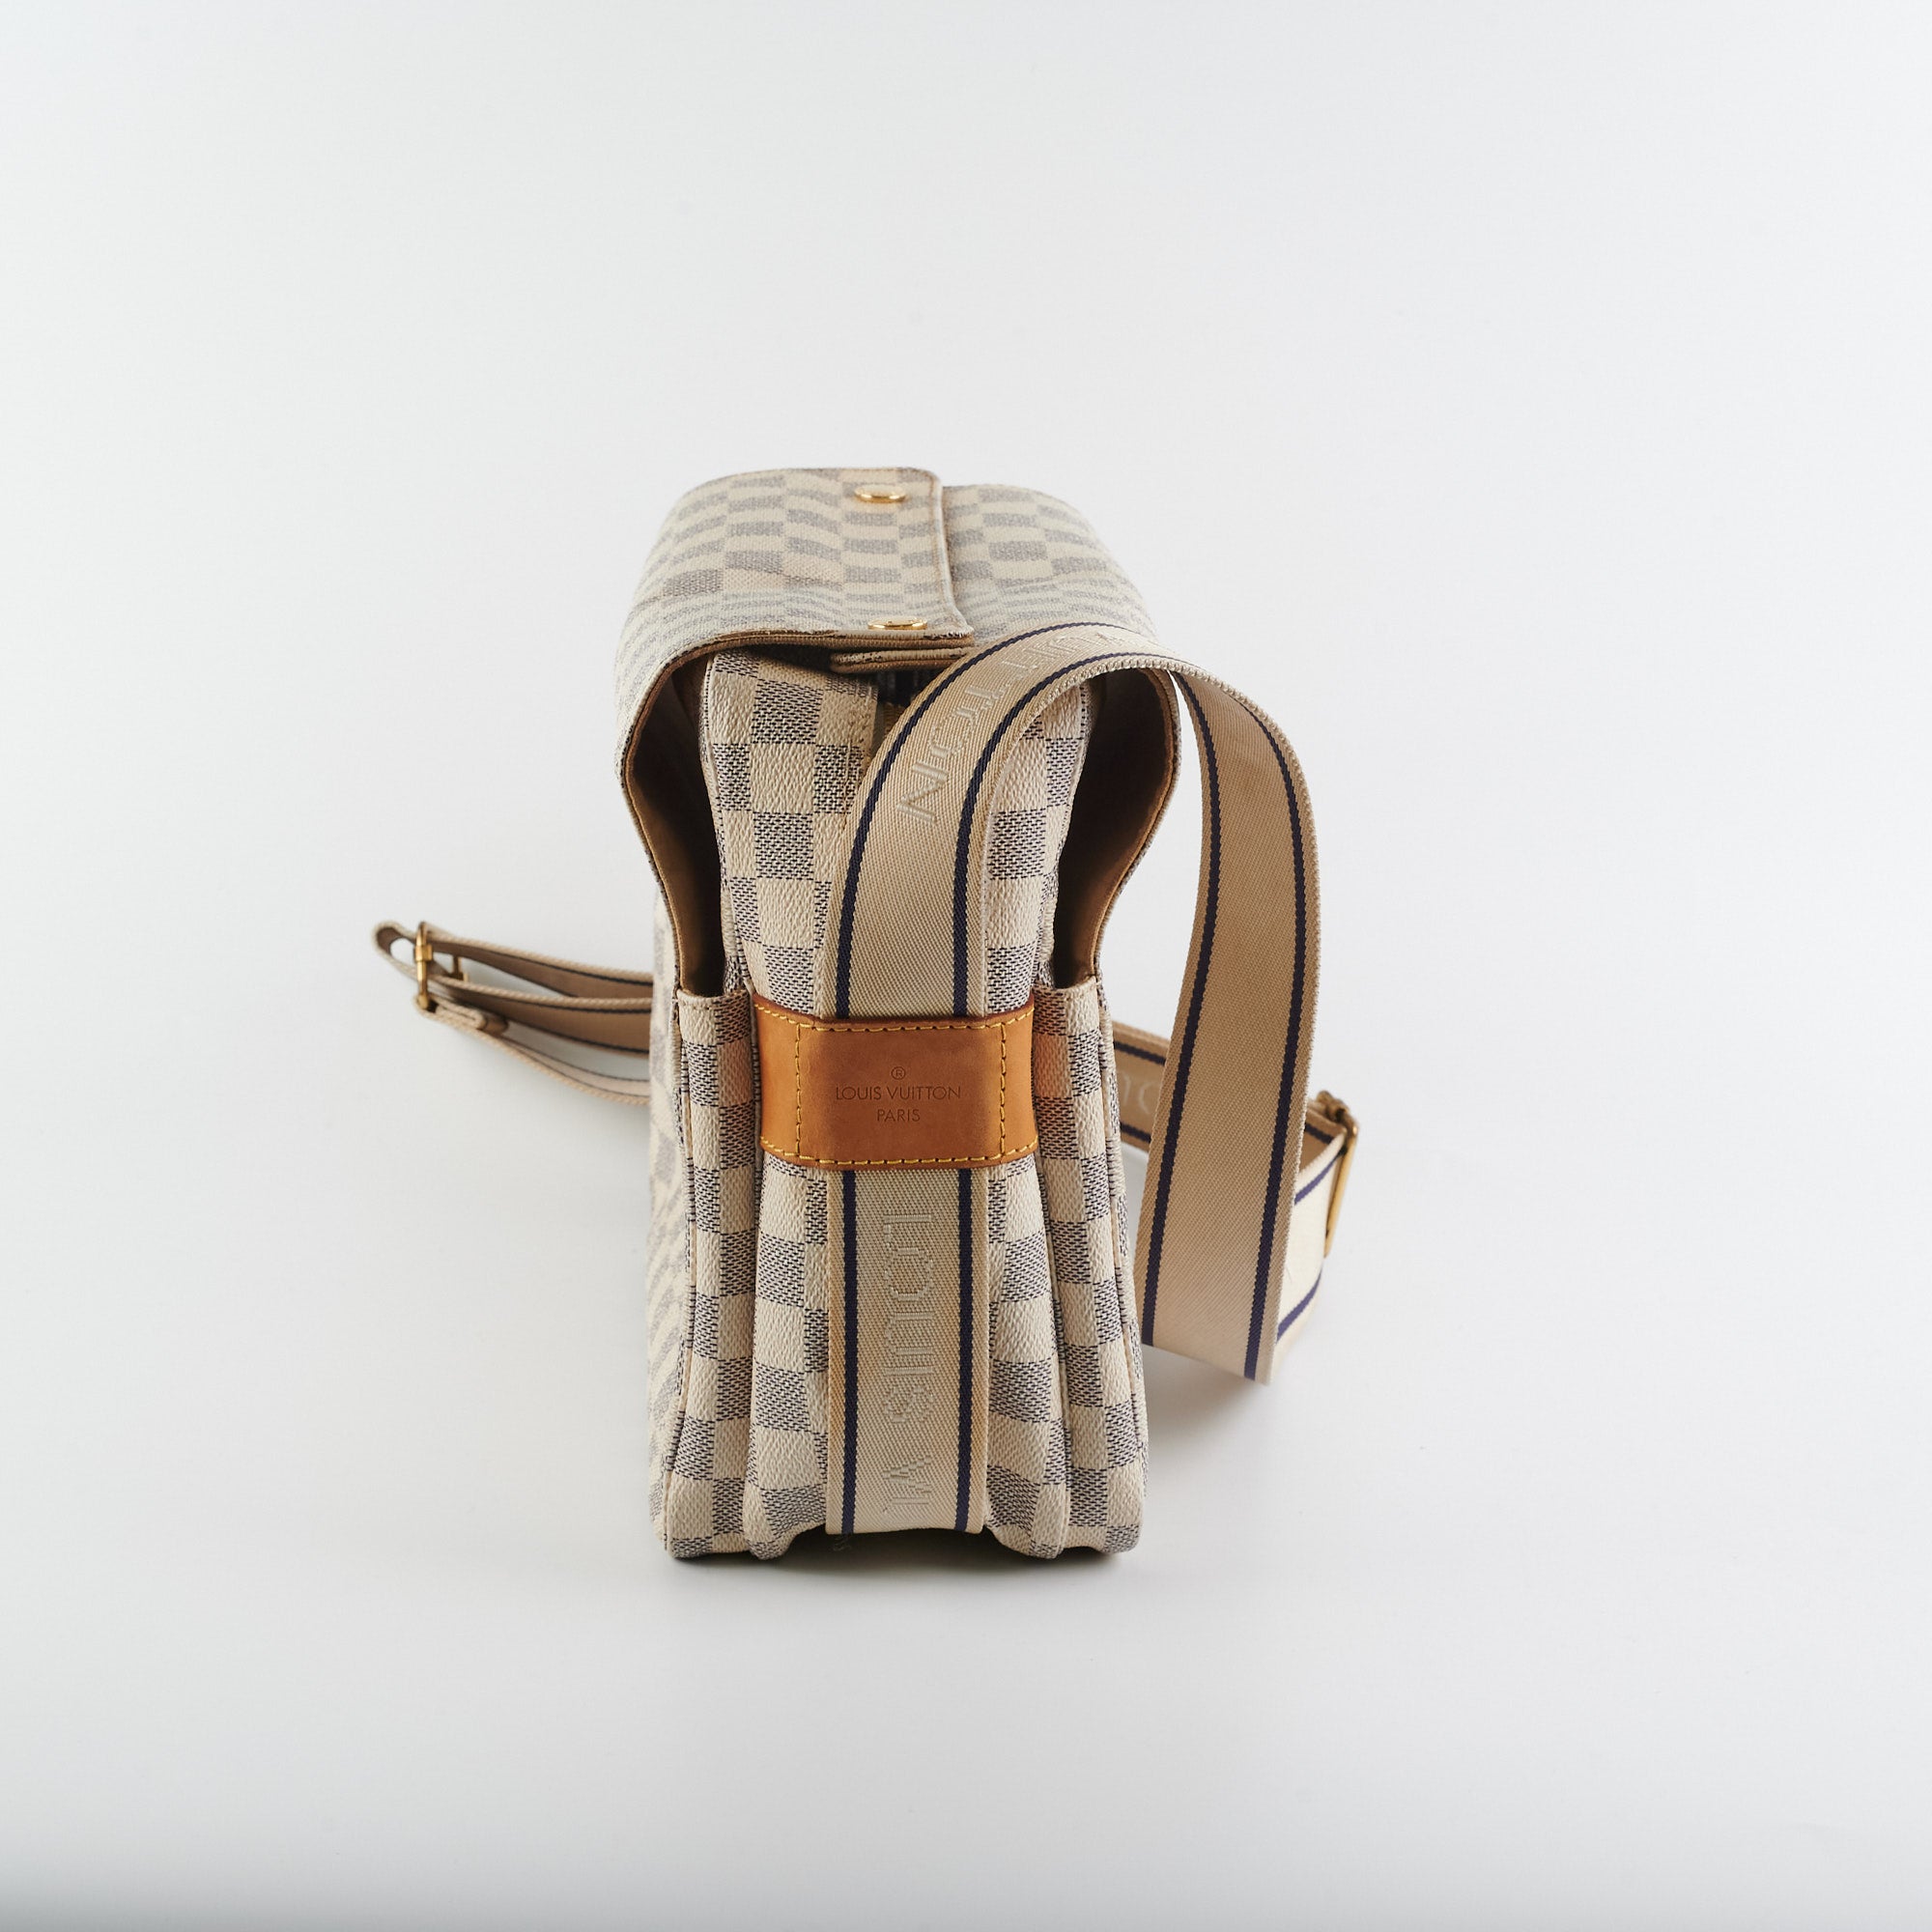 Authentic LOUIS VUITTON Naviglio Damier Azur Messenger Shoulder Bag #52873